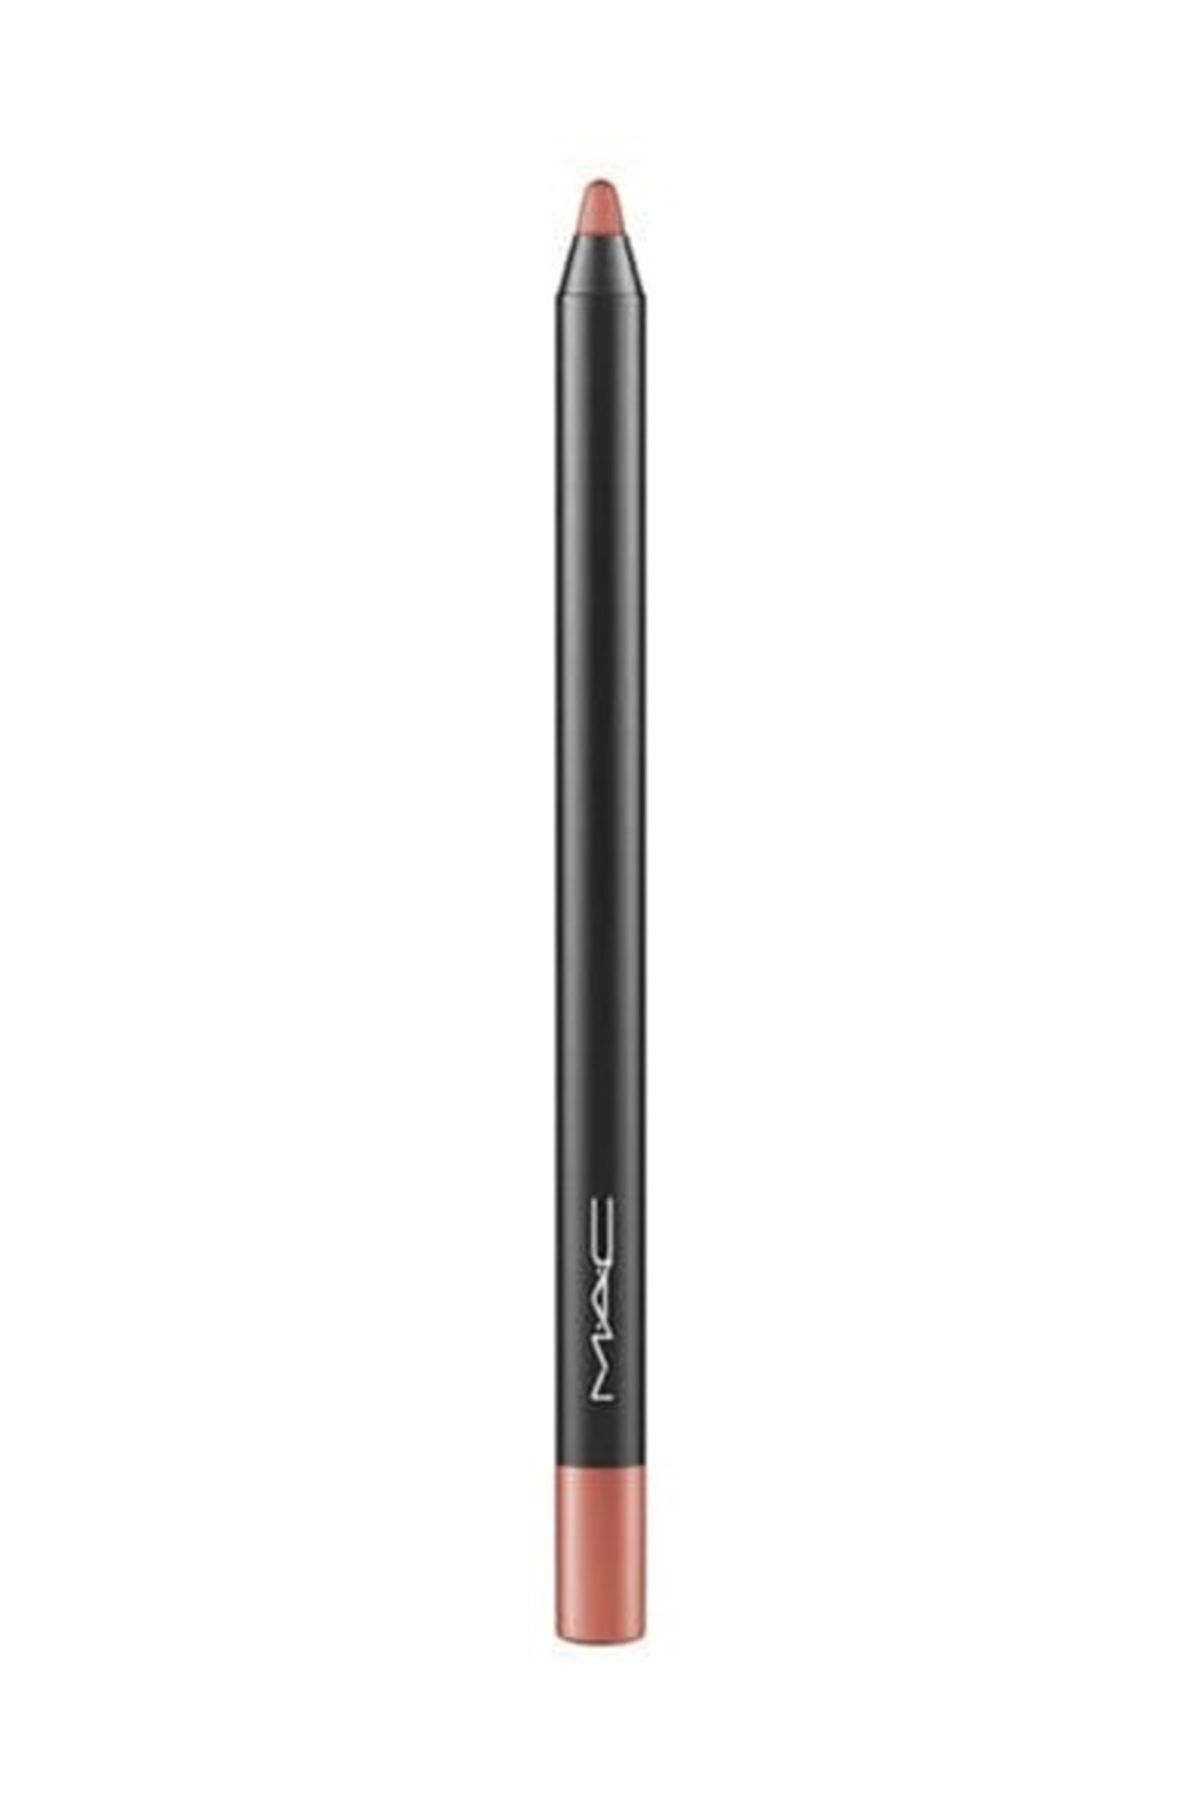 Mac Uzun Süre Kalıcı Dudak Kalemi - Pro Longwear Lip Pencil Nice ‘n’ Spicy 1.2 g 773602237135